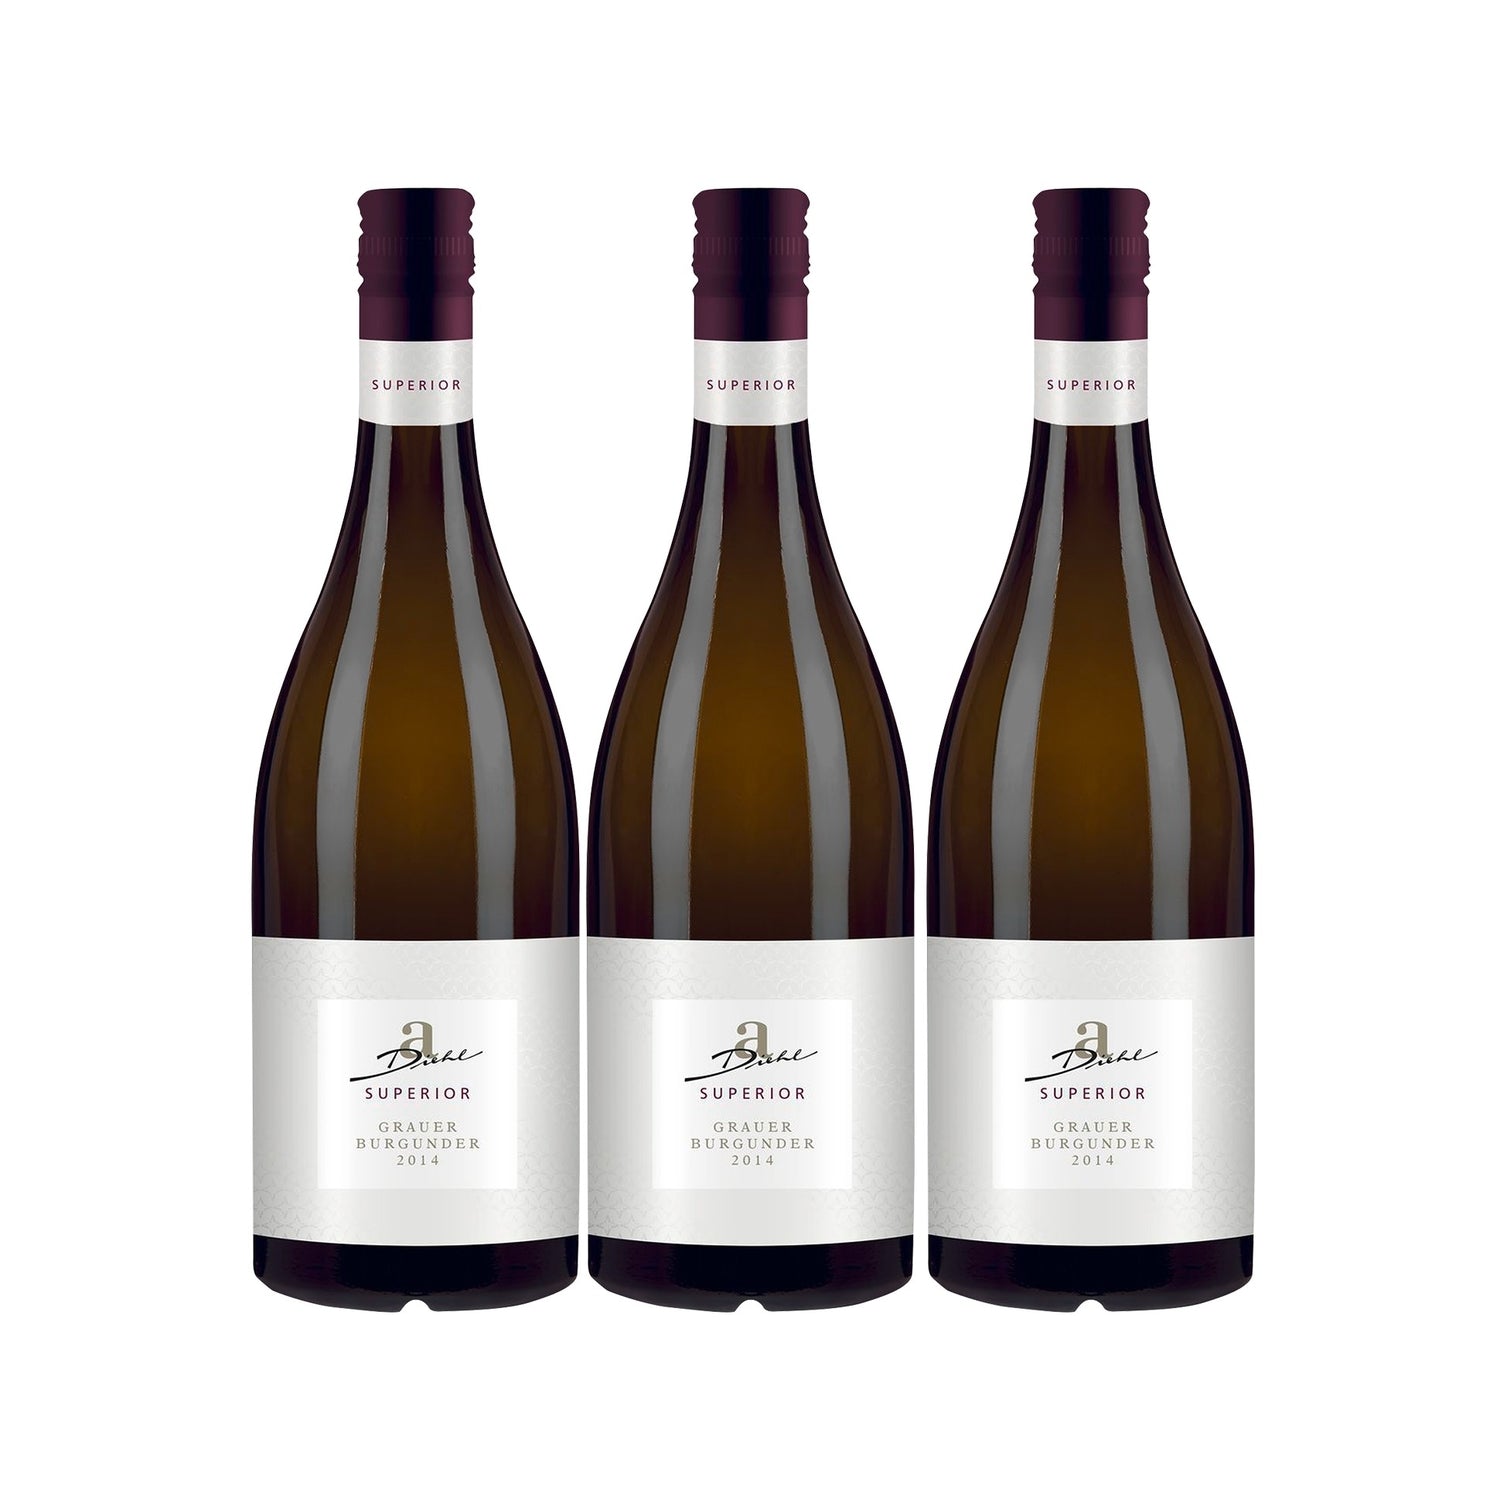 A. Diehl Superior Grauer Burgunder Weißwein veganer Wein trocken QbA (3 x 0.75l) - Versanel -